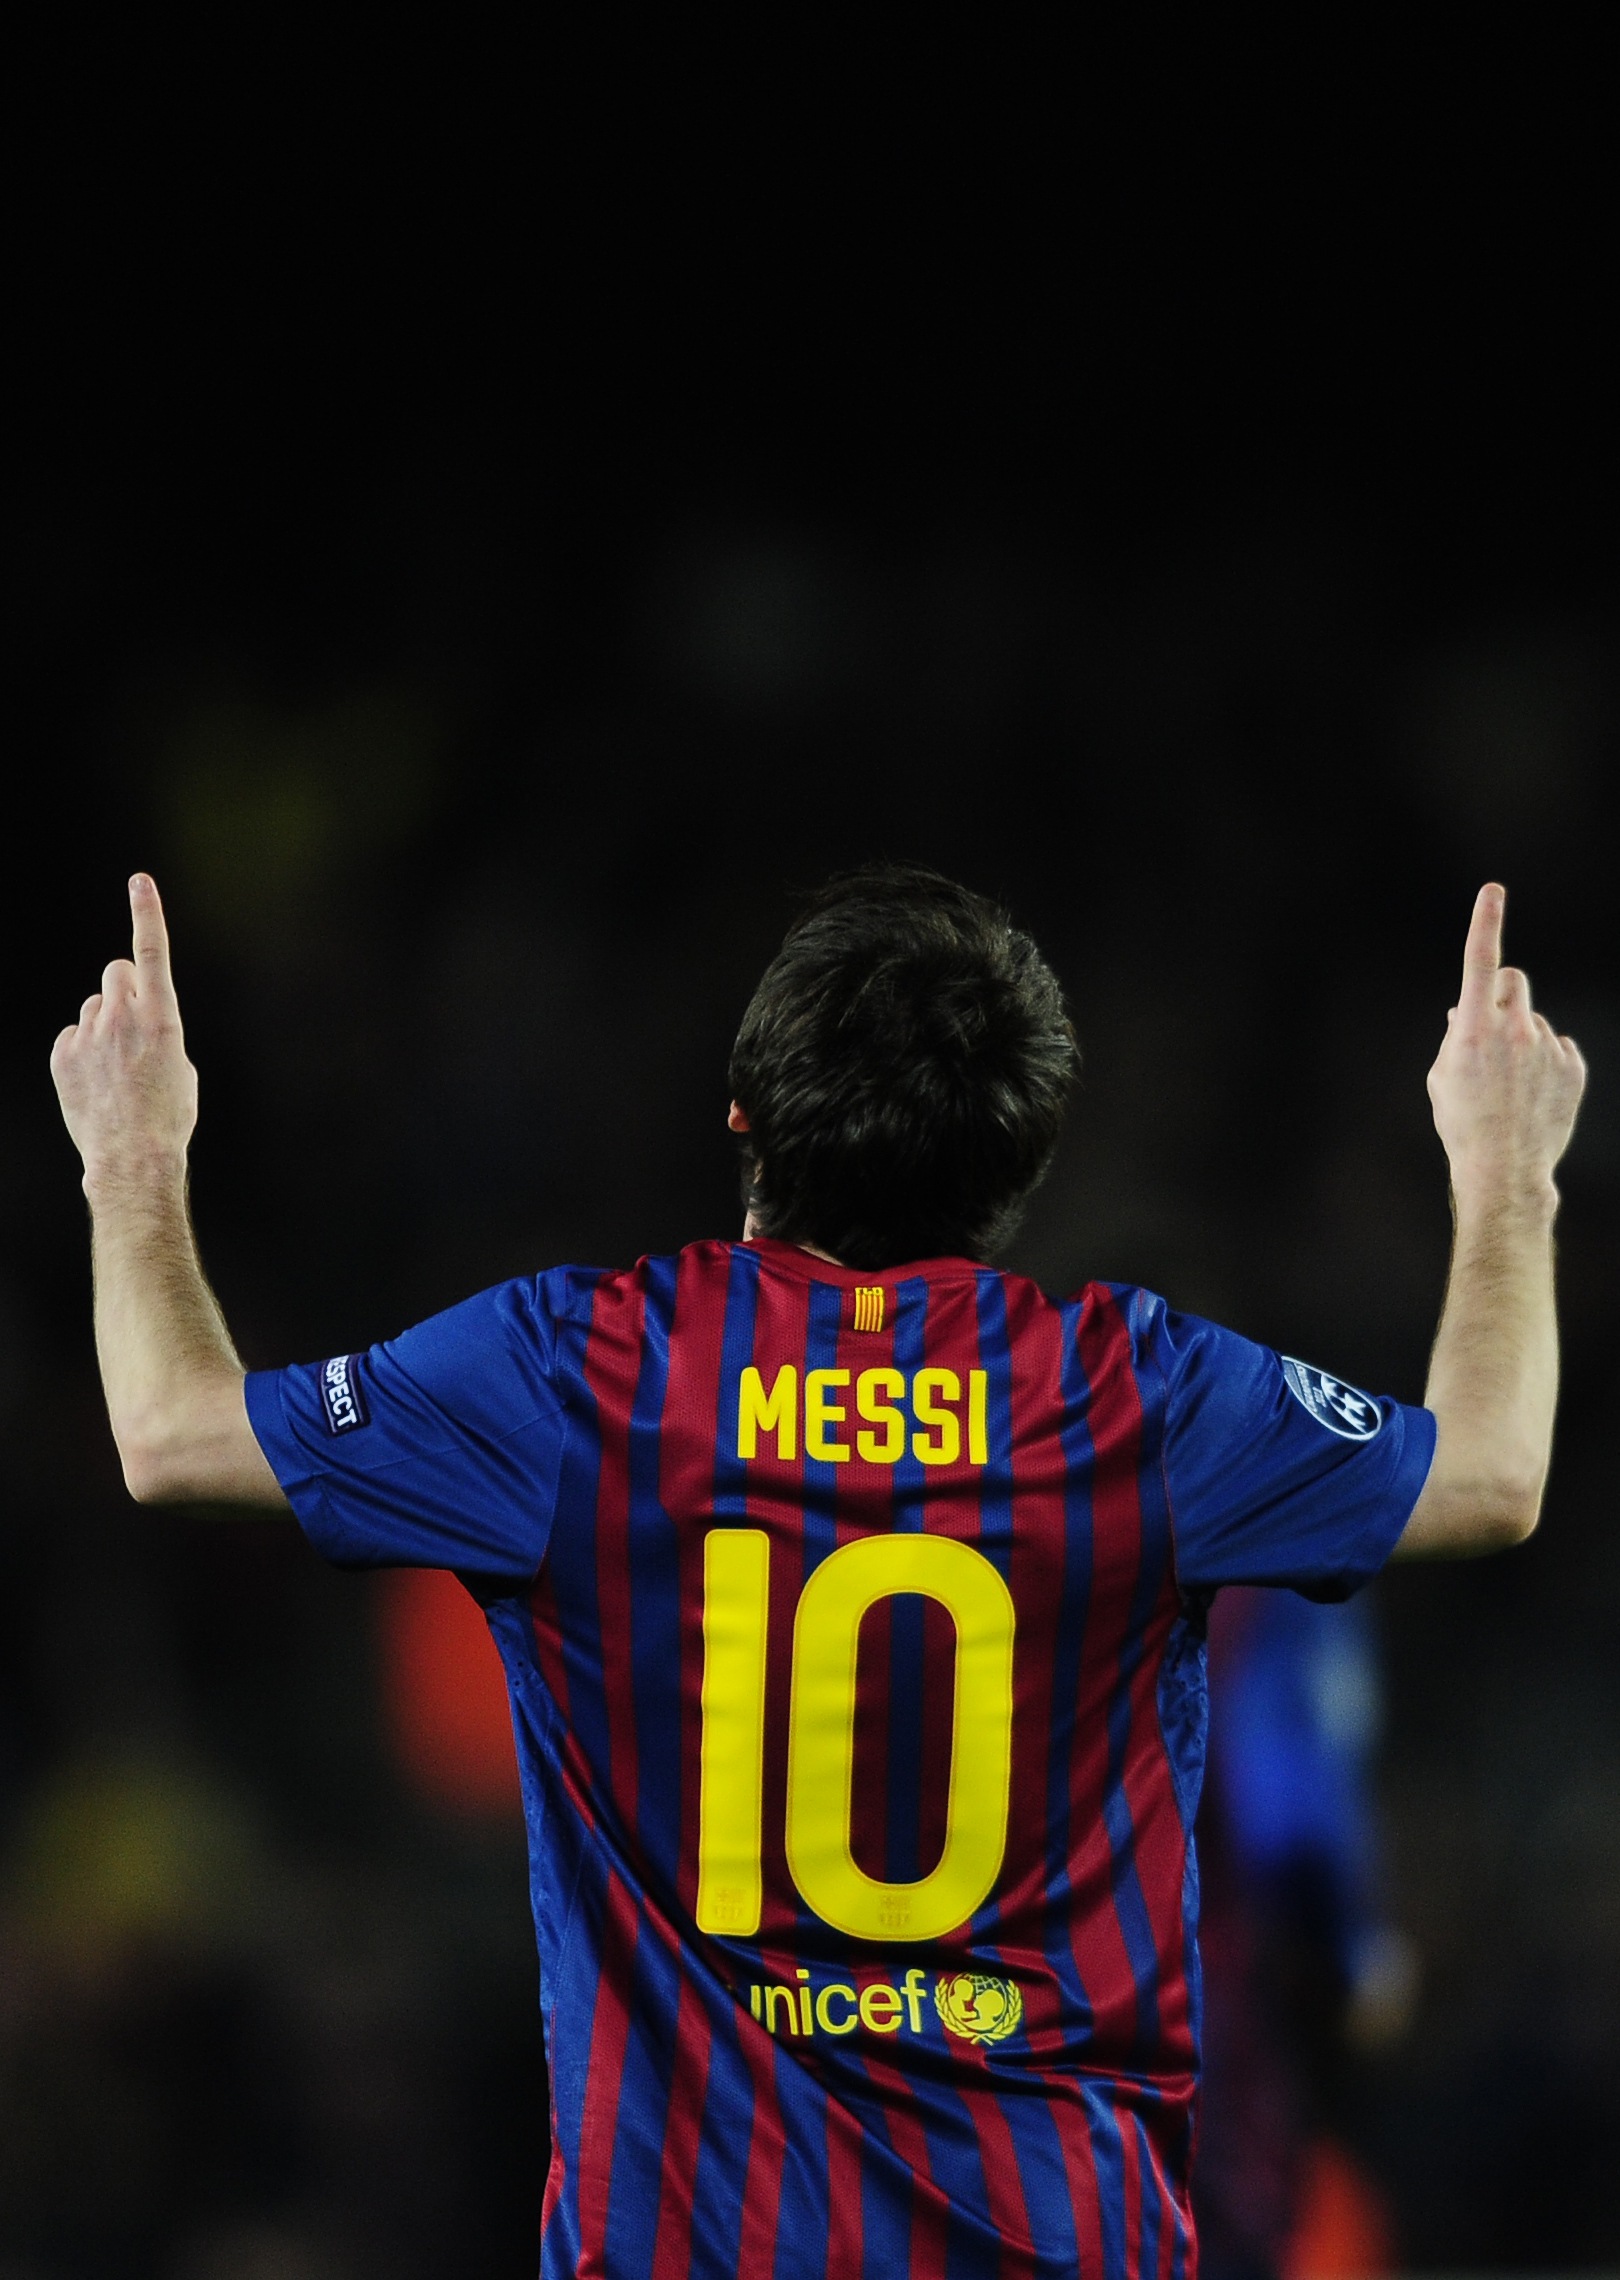 Messi är också snäpper mer passningssäker. Han har 82 procent i passningssäkerhet, medan Ronaldo har 78 procent.